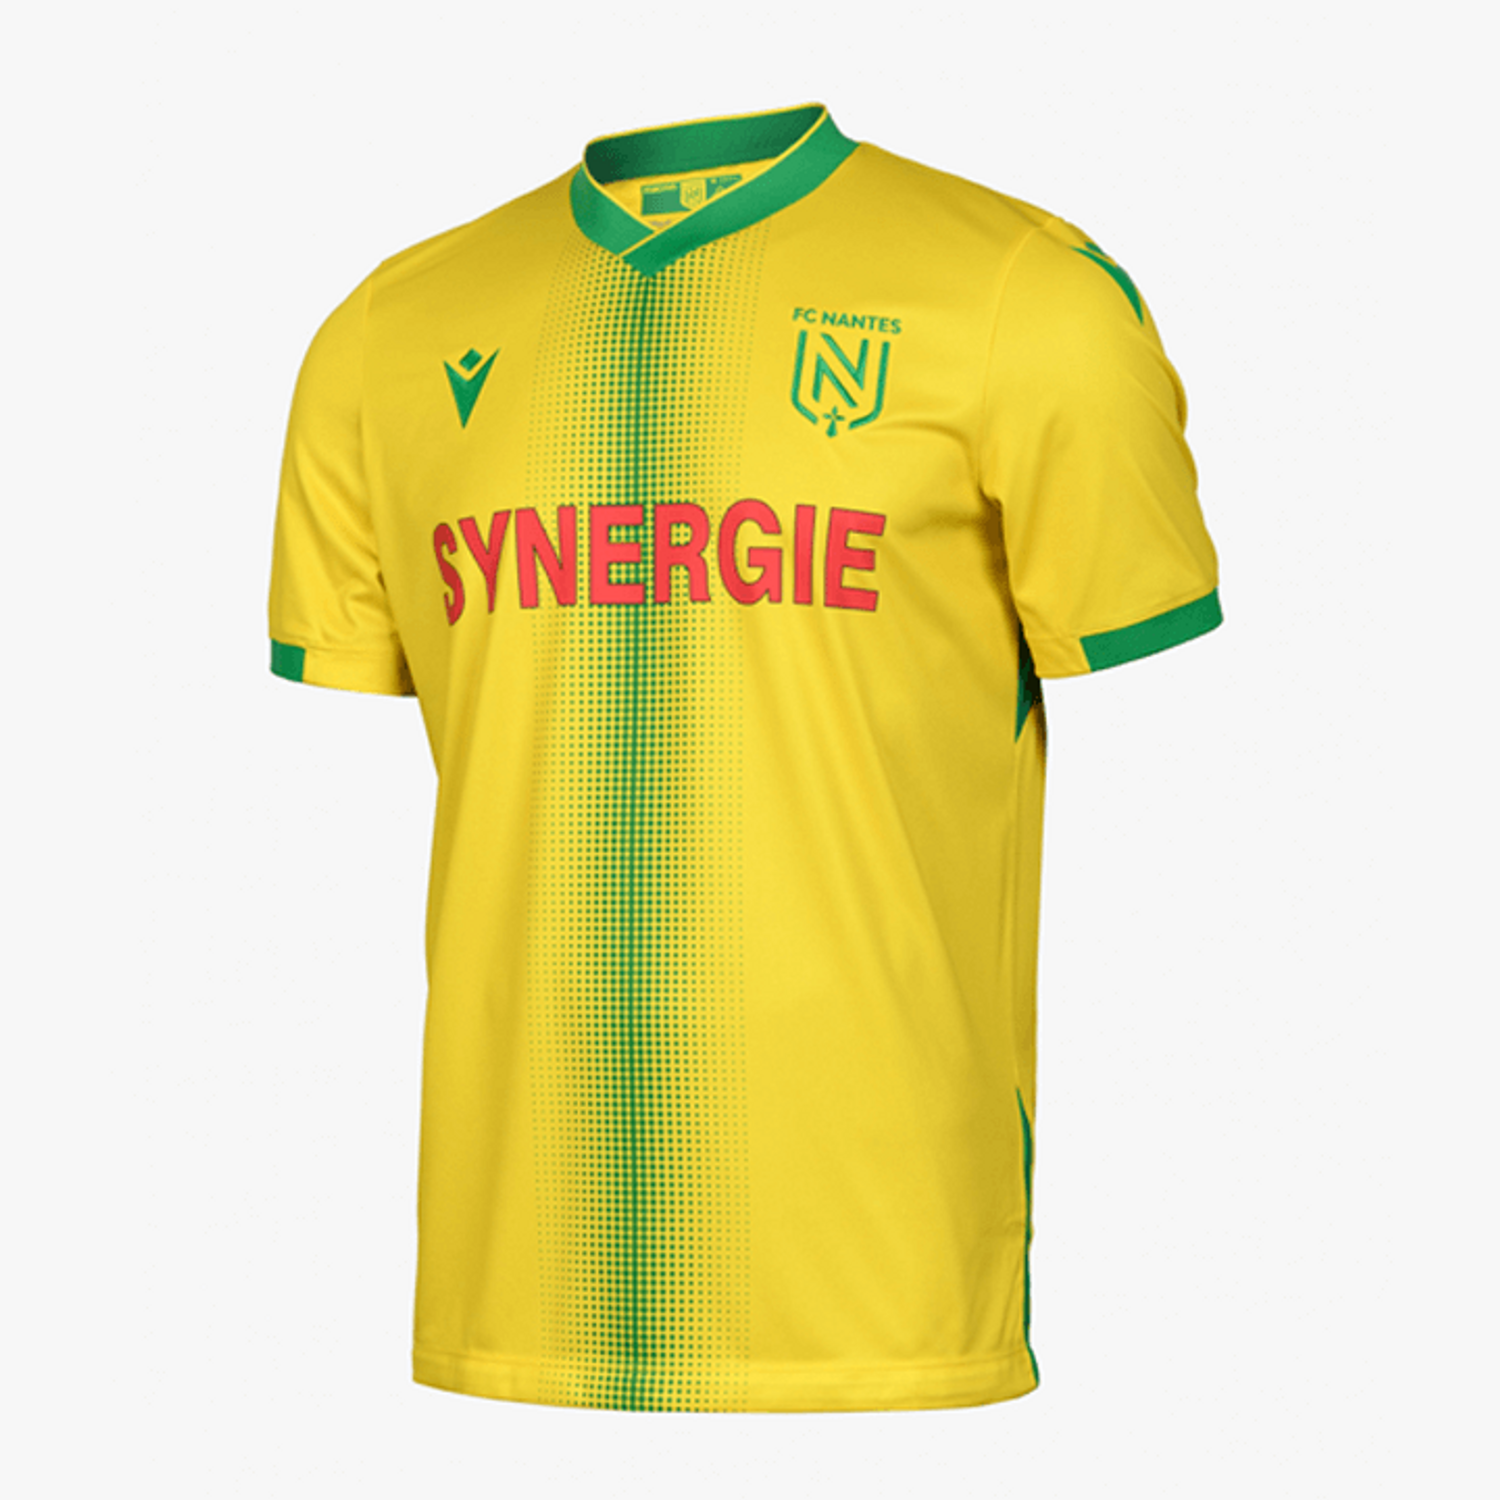 Alouette vous offre le maillot supporter du FC Nantes !